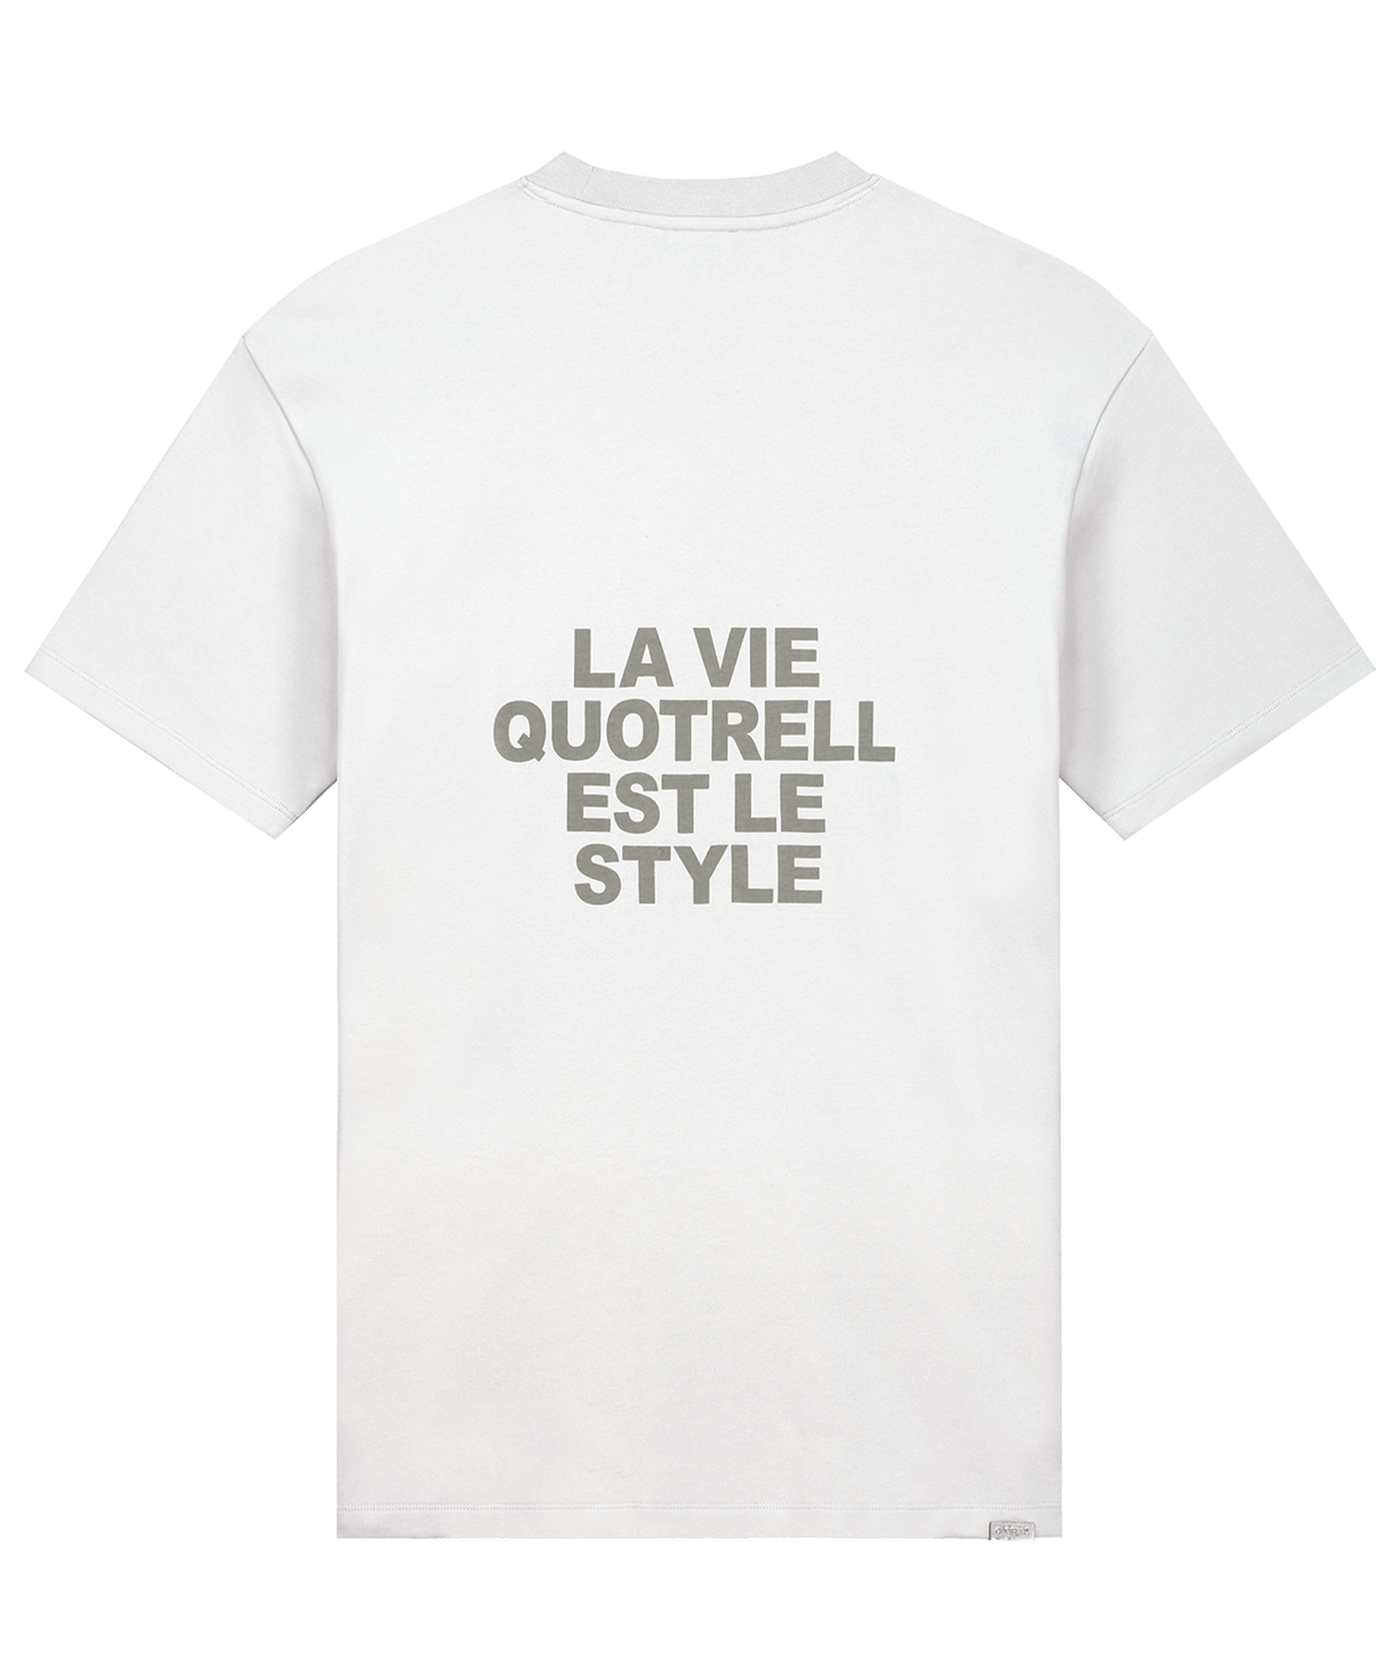 Quotrell - La Vie - T-shirt - Cement/concrete